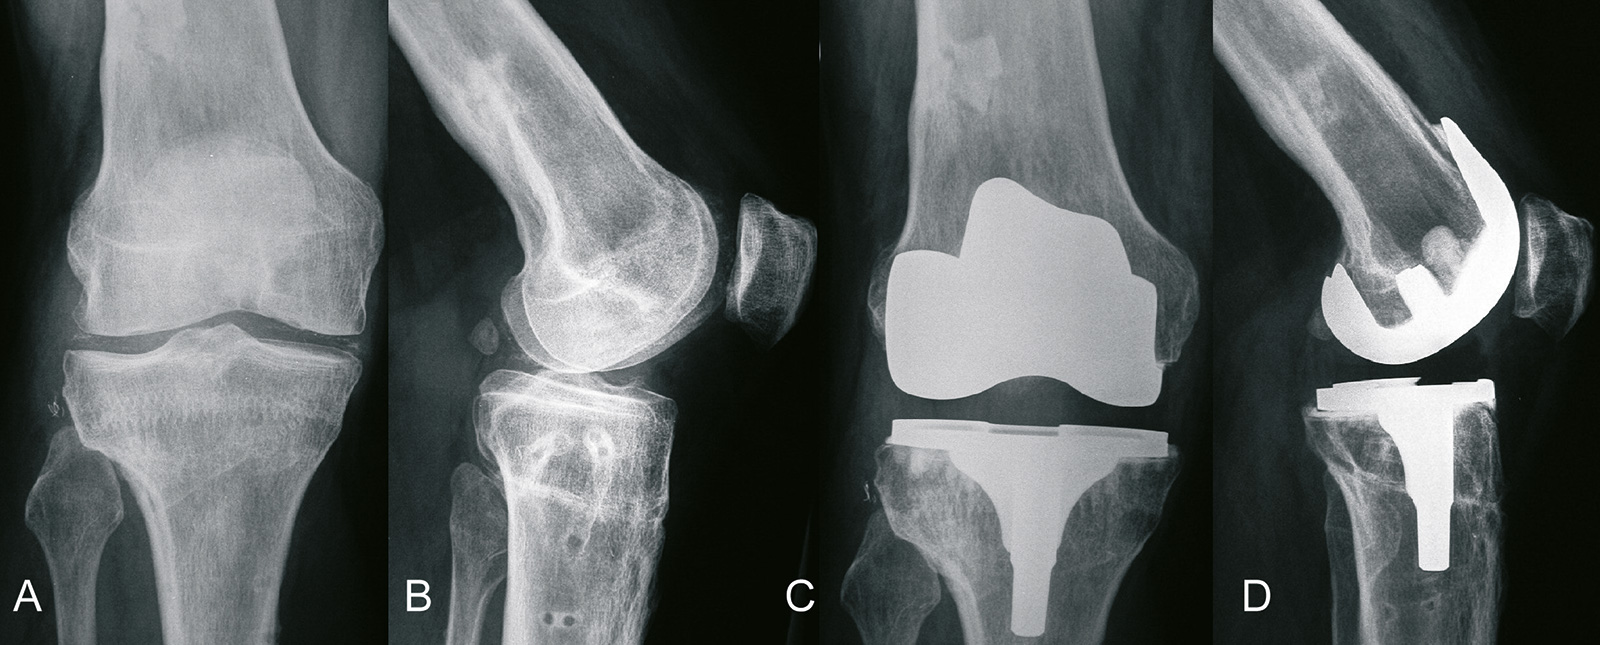 Abb. 1-38: Implantation einer Knieprothese (C,D) nach fehlgeschlagener Umstellungsosteotomie (A,B) (Eigentum des Instituts für Klinische Radiologie der Universität Münster)